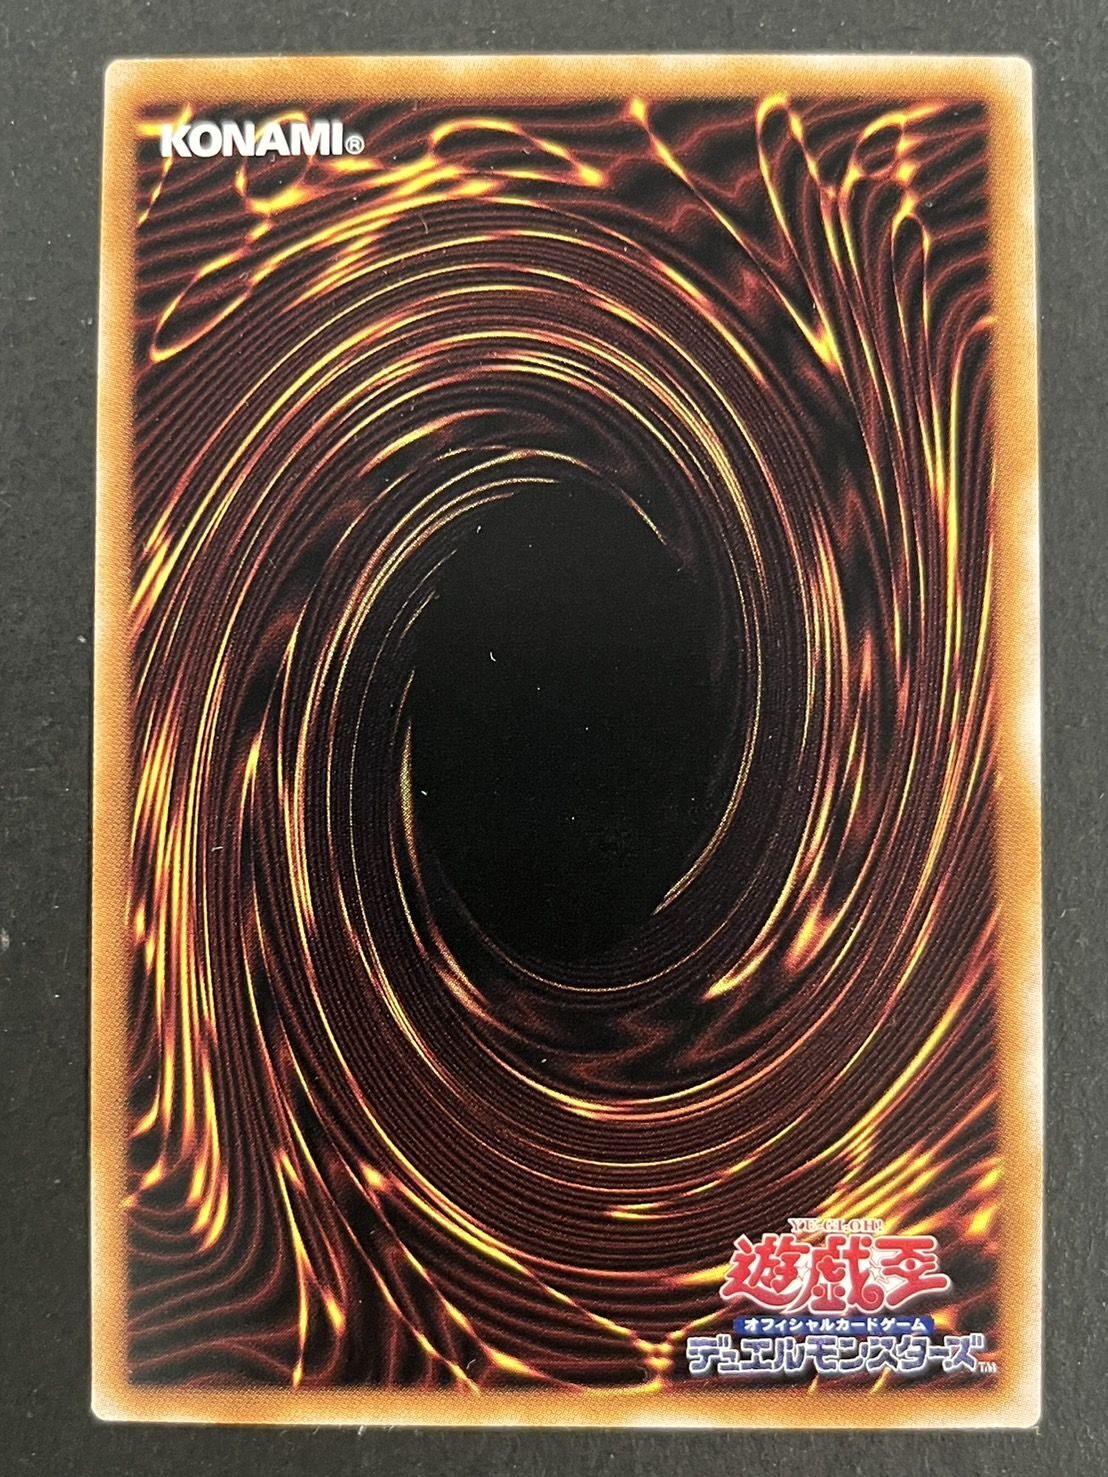 『トークンあり』side:UNITYスペシャルカードセット(ブラックマジシャン&ブラックマジシャンガール)【-】{-}《その他》